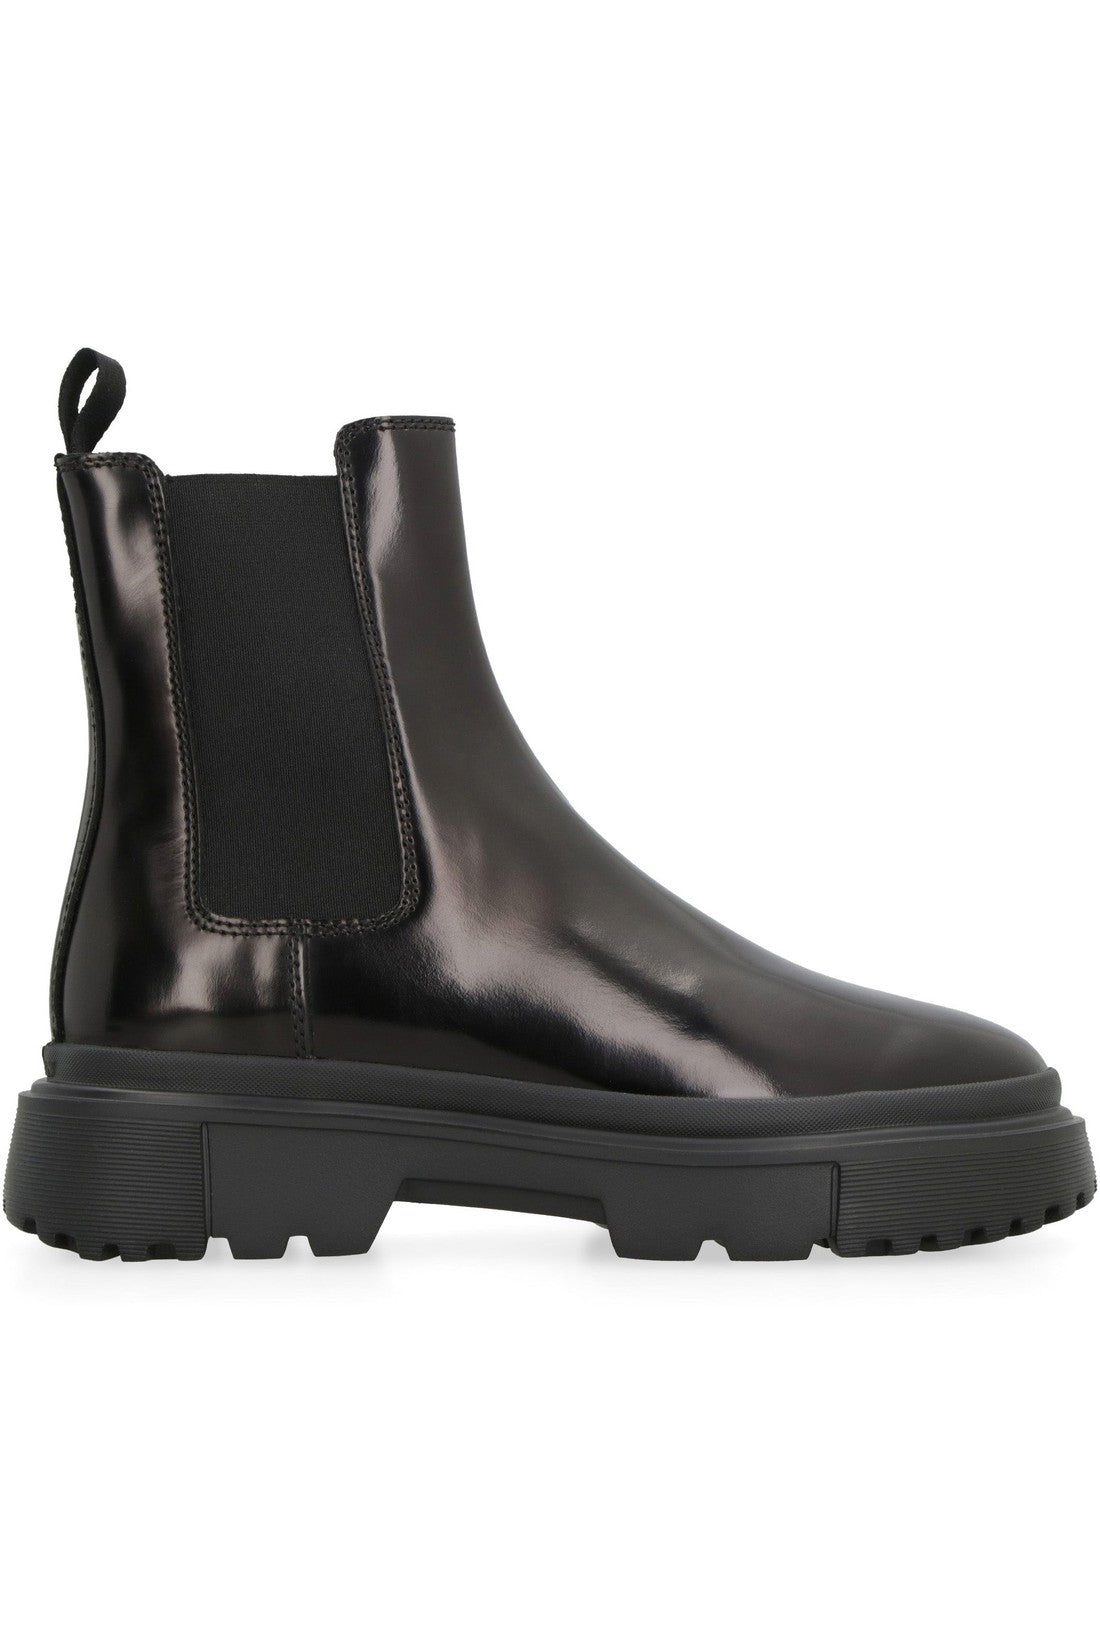 Hogan-OUTLET-SALE-Hogan H619 leather Chelsea boots-ARCHIVIST